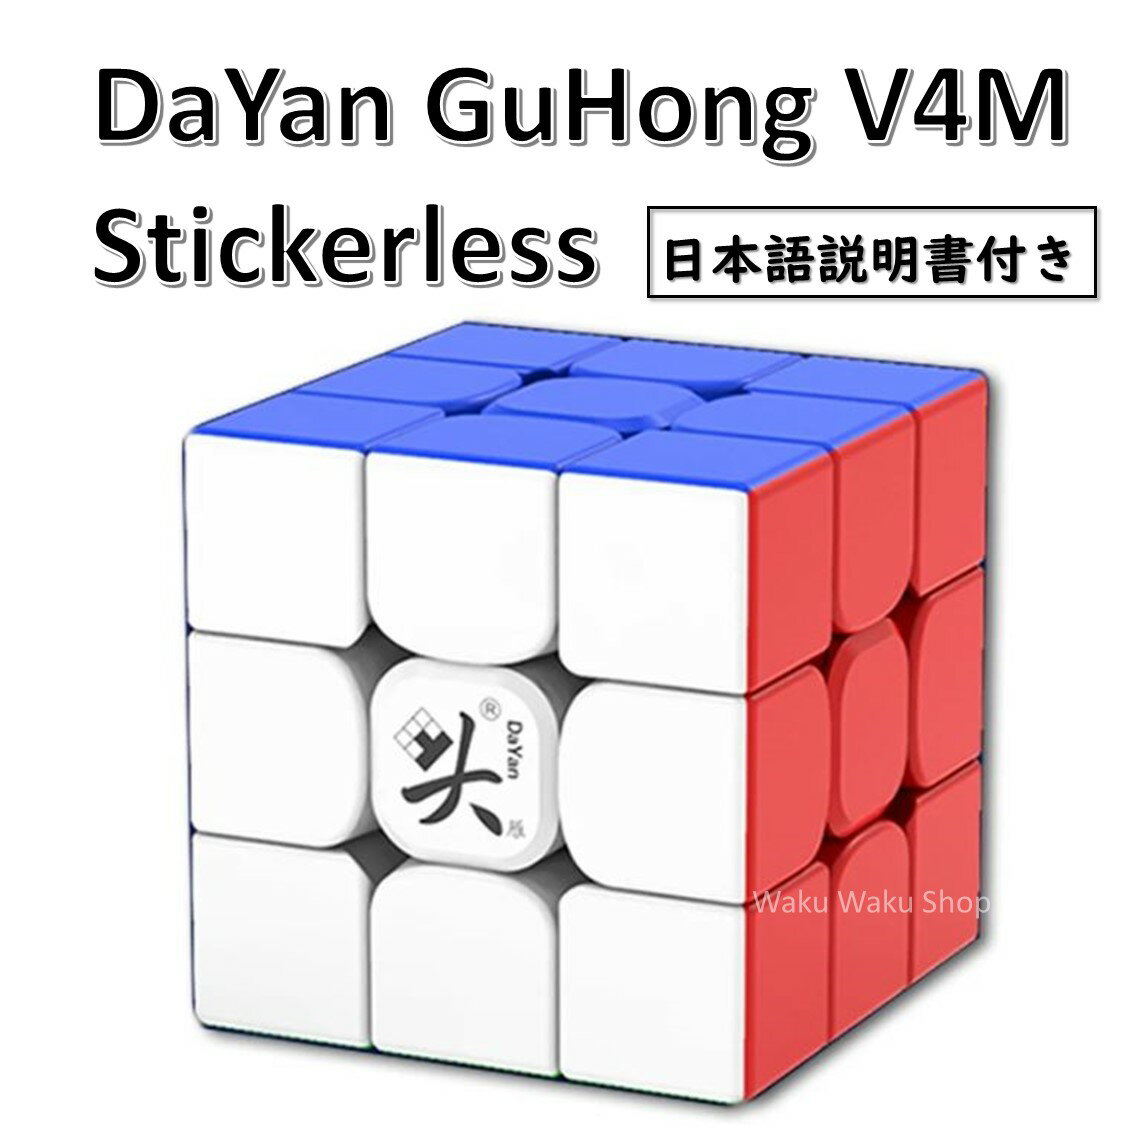 【日本語説明書付き】 【安心の保証付き】 【正規販売店】 DaYan GuHong V4M 磁石搭載 3x3x3キューブ ステッカーレス ルービックキューブ おすすめ なめらか